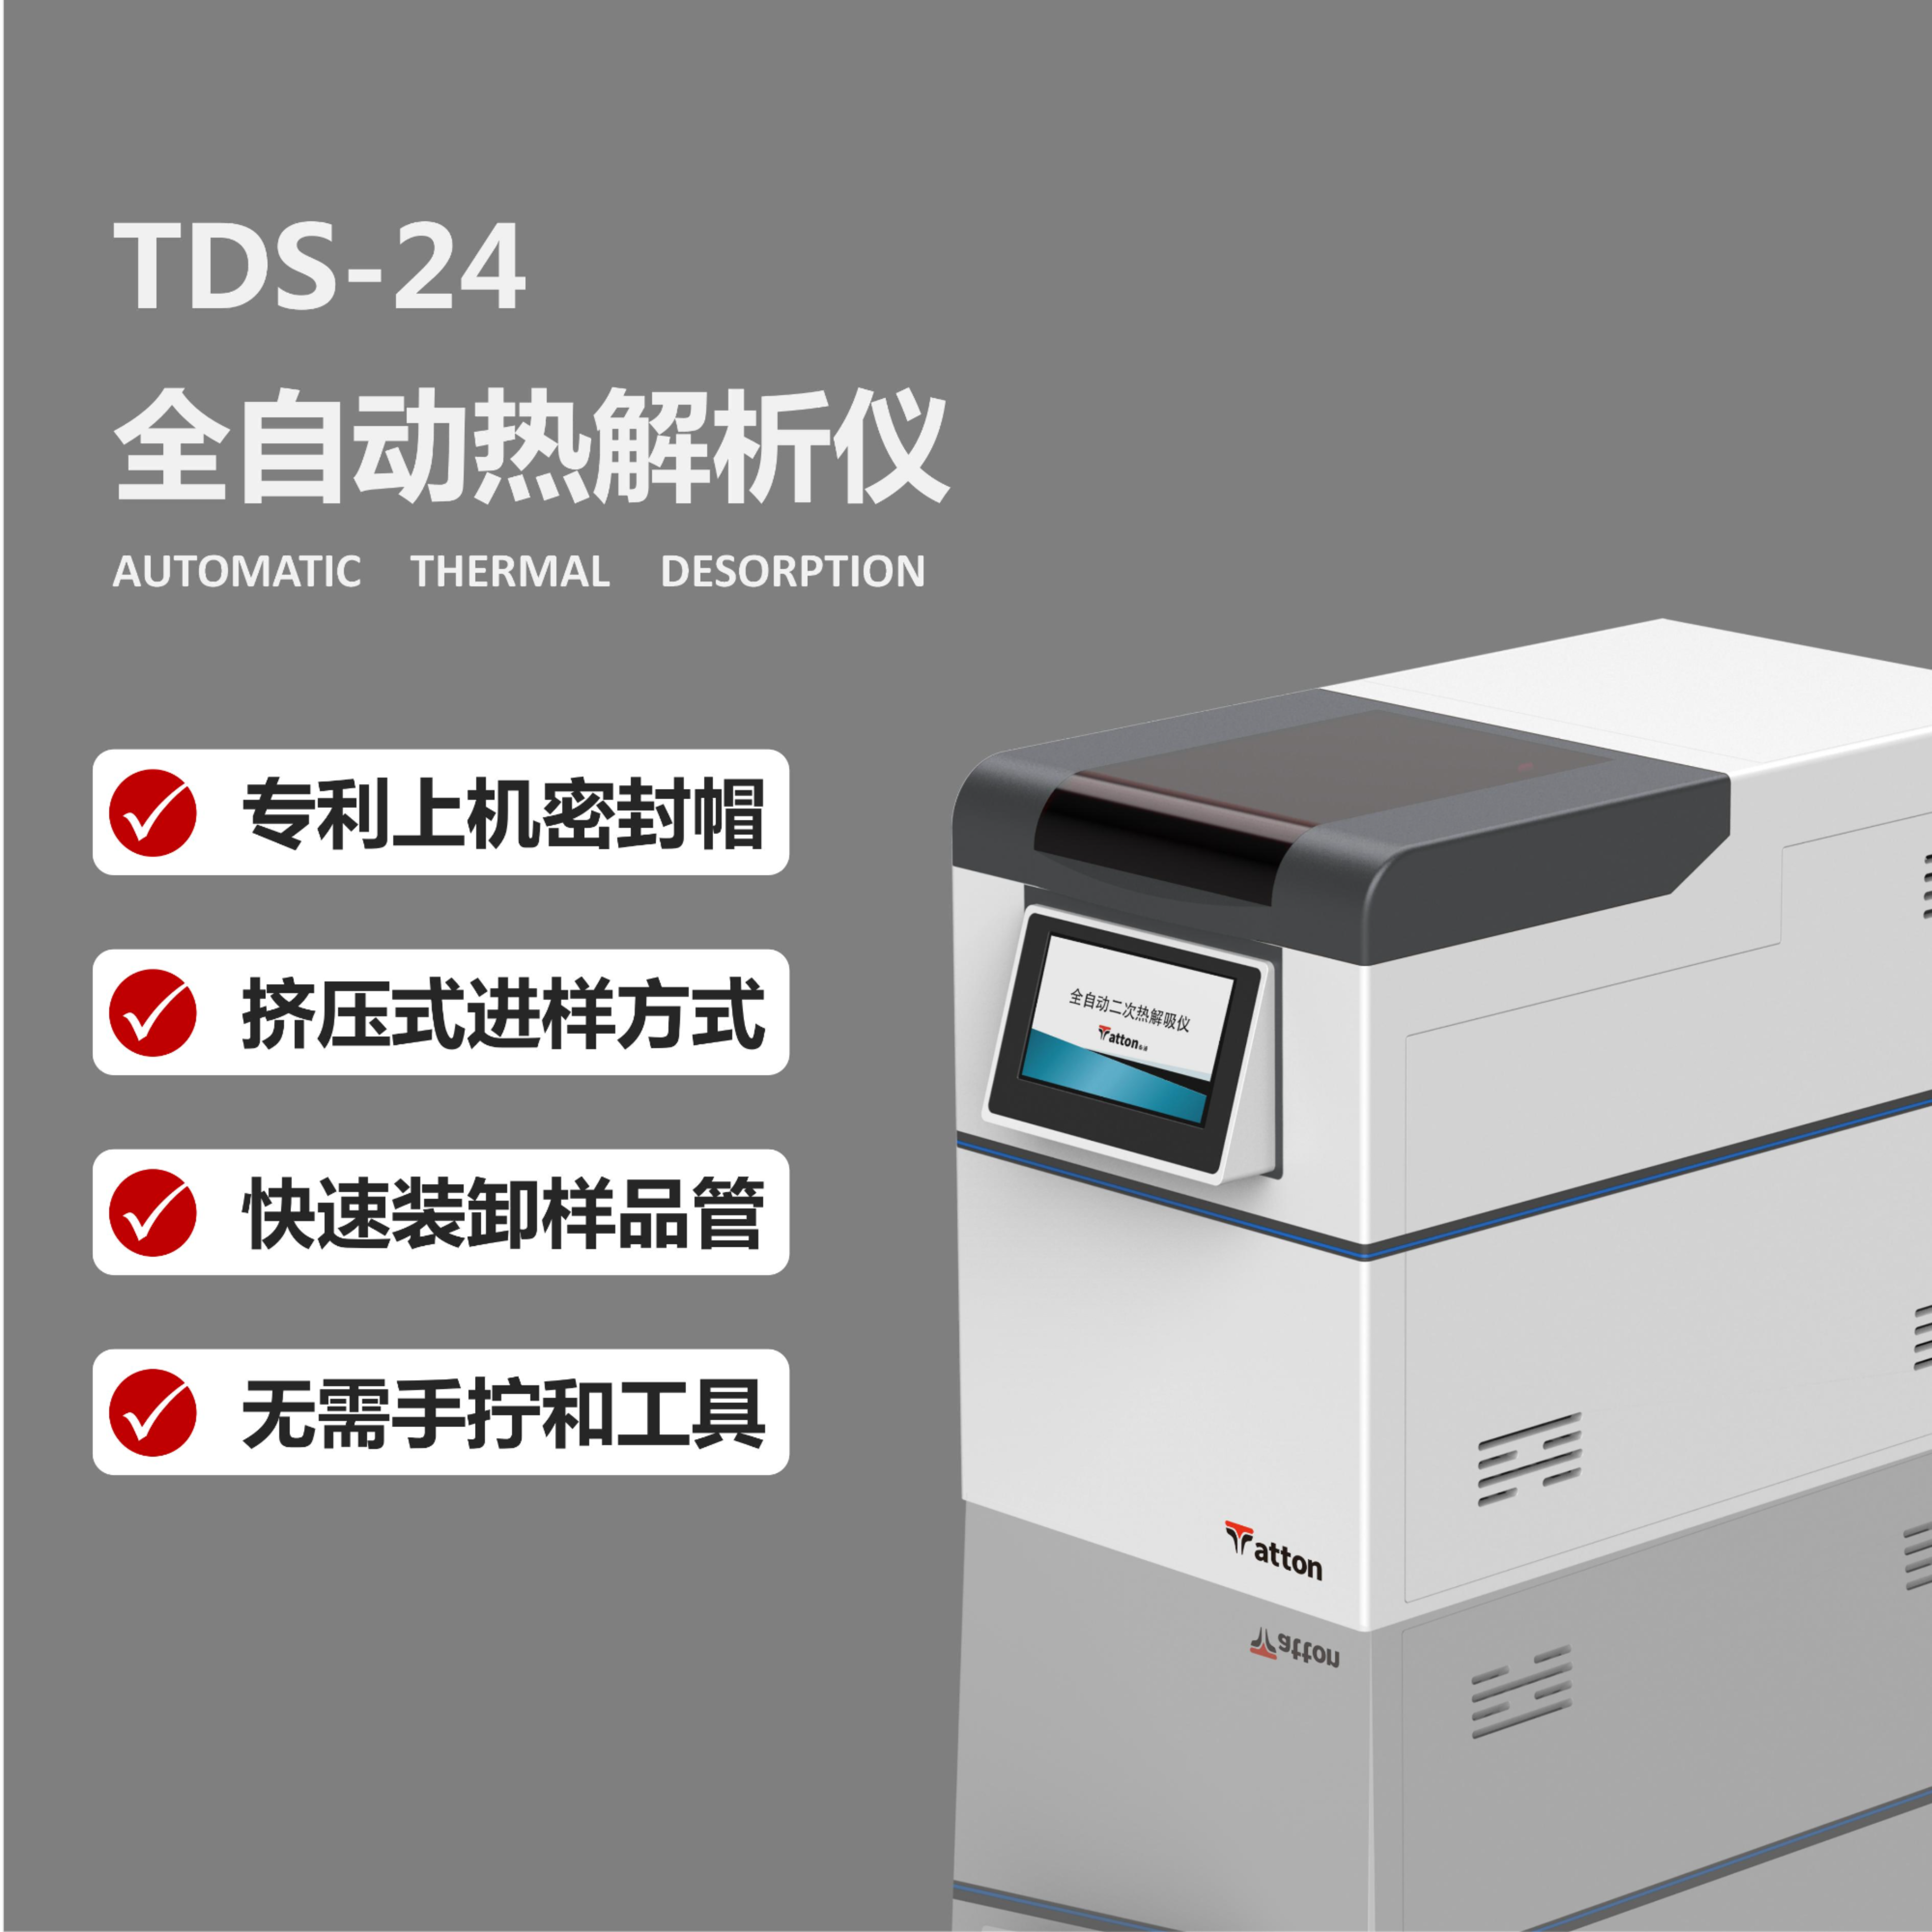 全自动热解吸仪  TDS-24 泰通